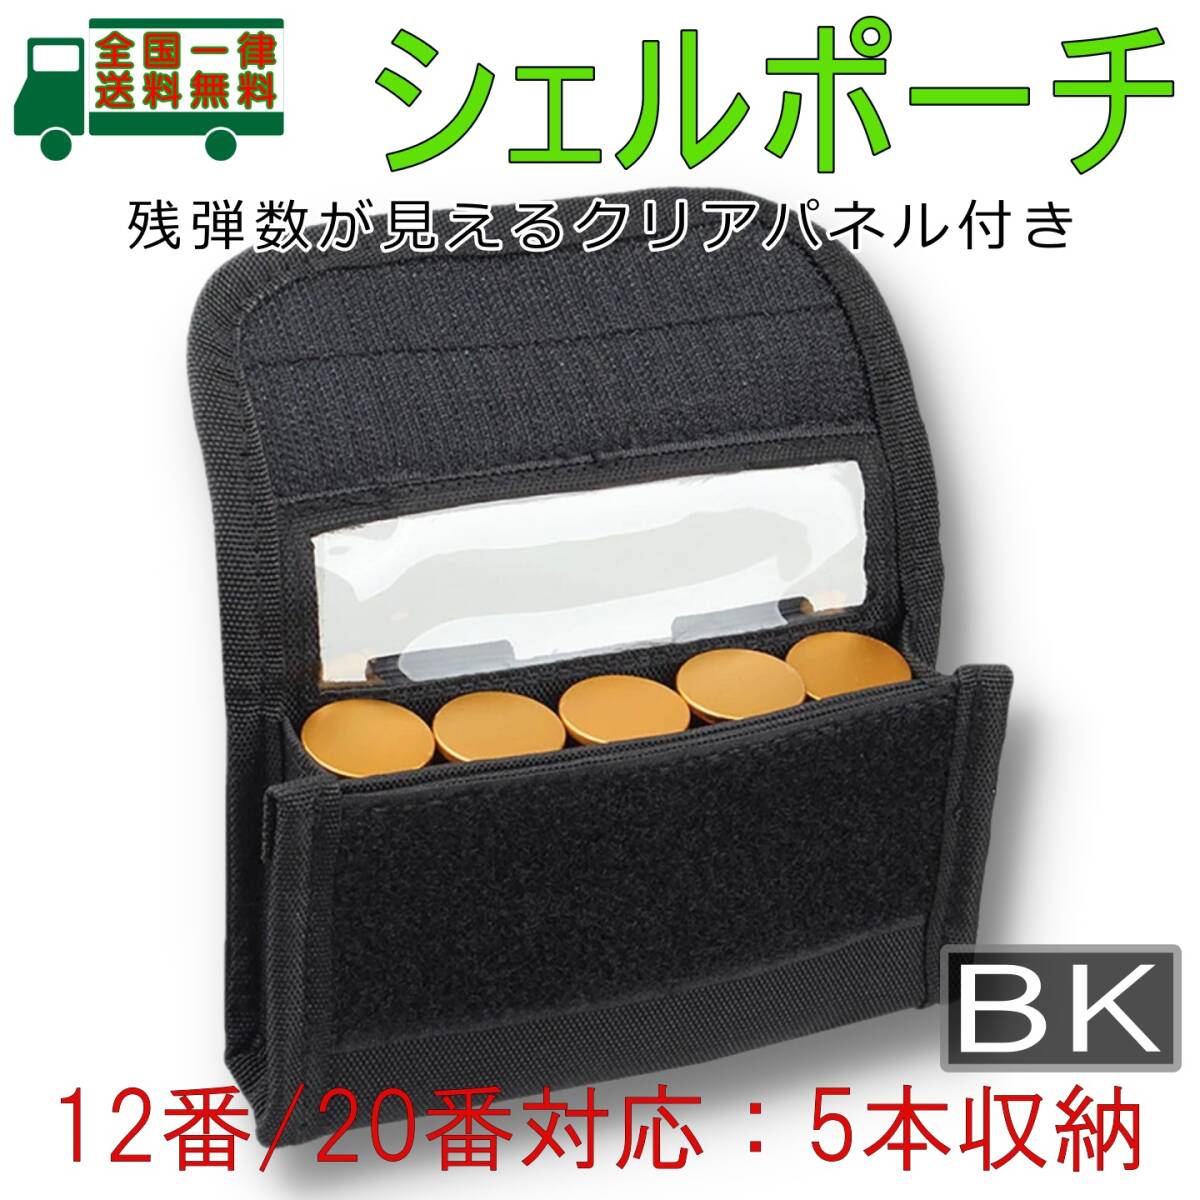  Schott shell holder pouch BK 12GA/12 number *20GA/20 number 5ps.@ storage carrier .. gun medicine . case Schott gun gauge cartridge belt bag [ new goods ]